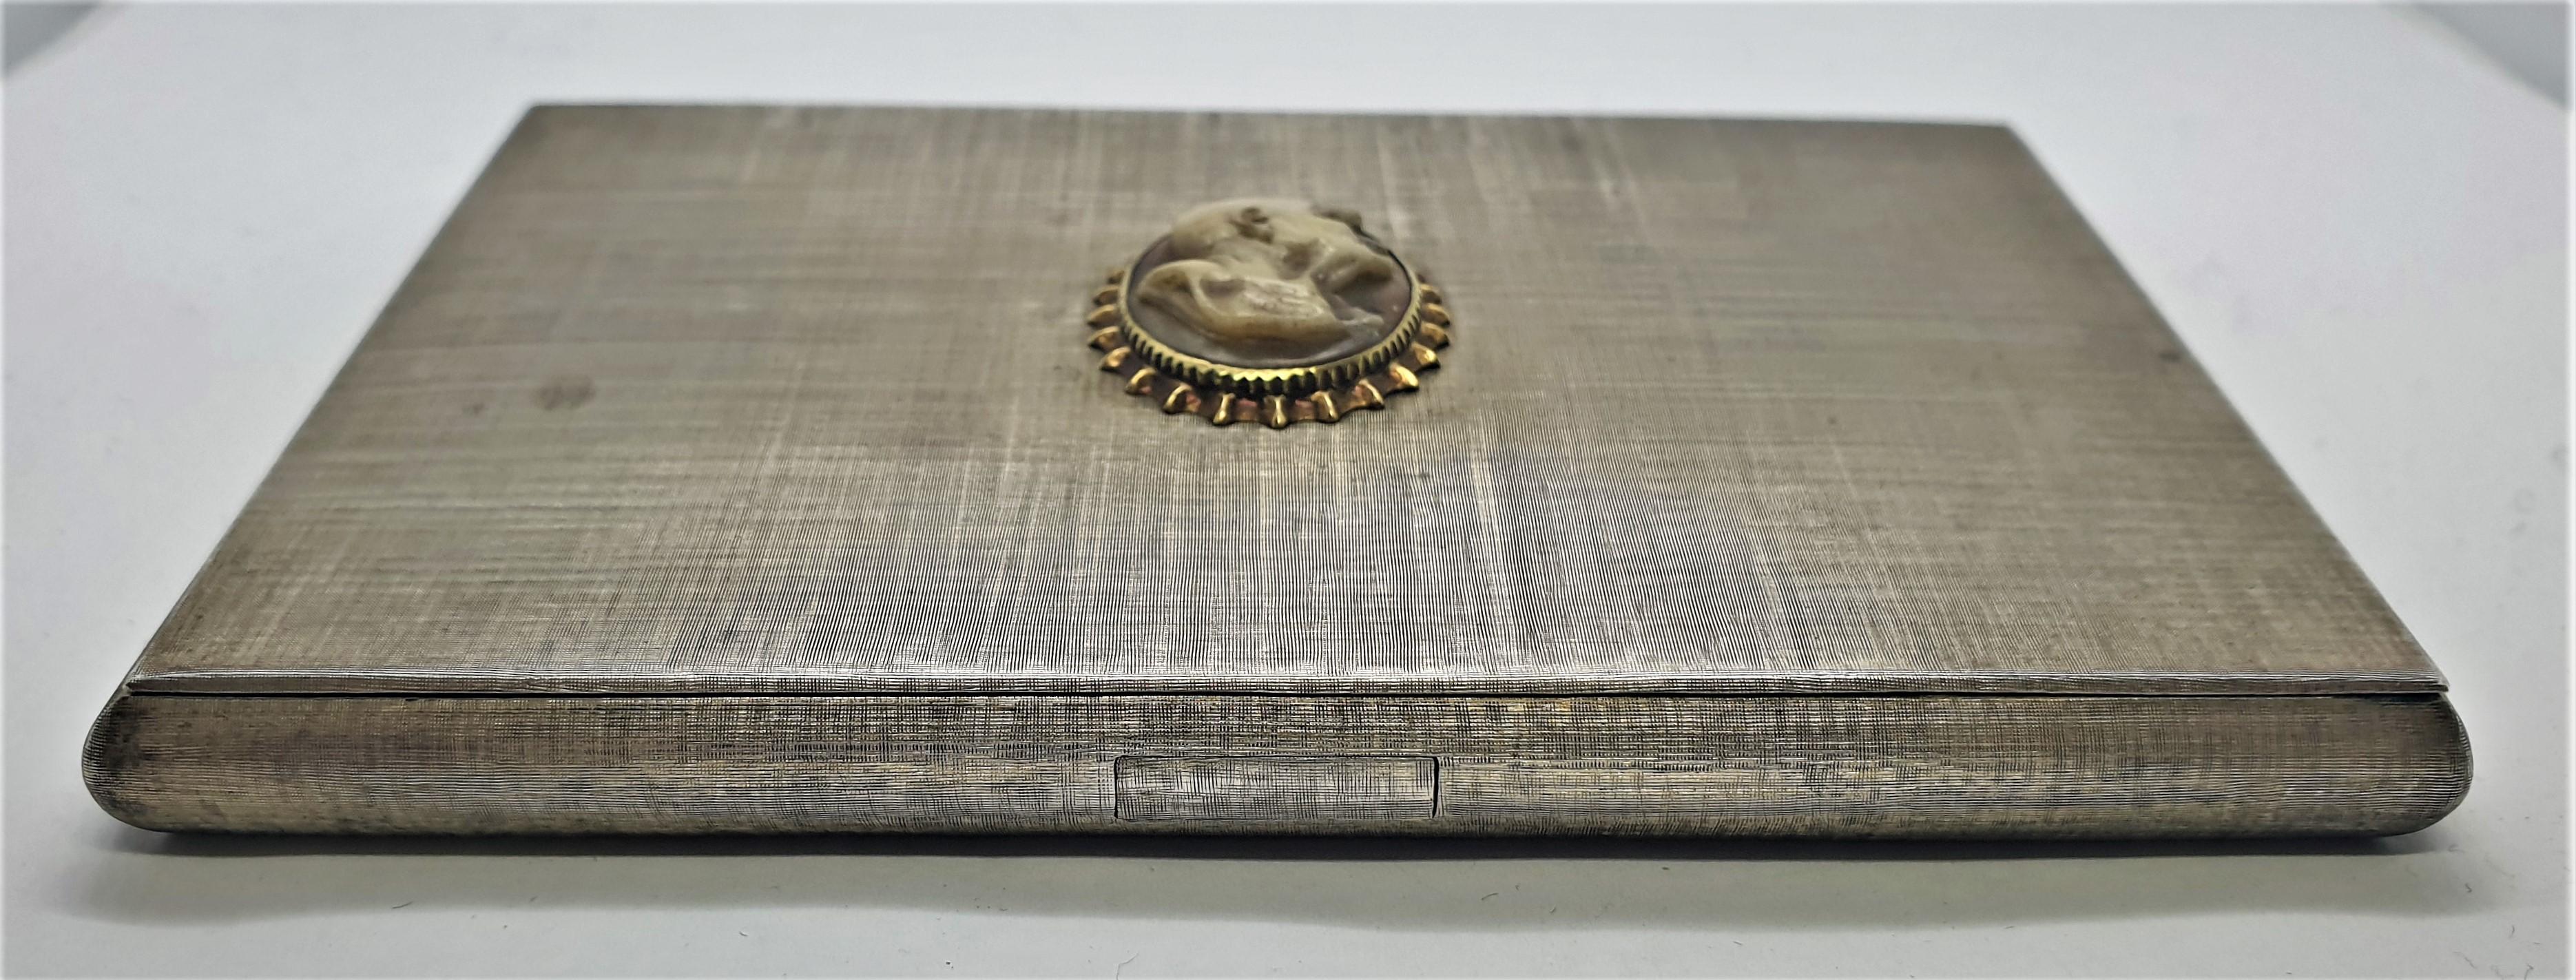 Art Deco 20th Century Mario Buccellati Siver Cigarette Box with Cameo, Italy For Sale